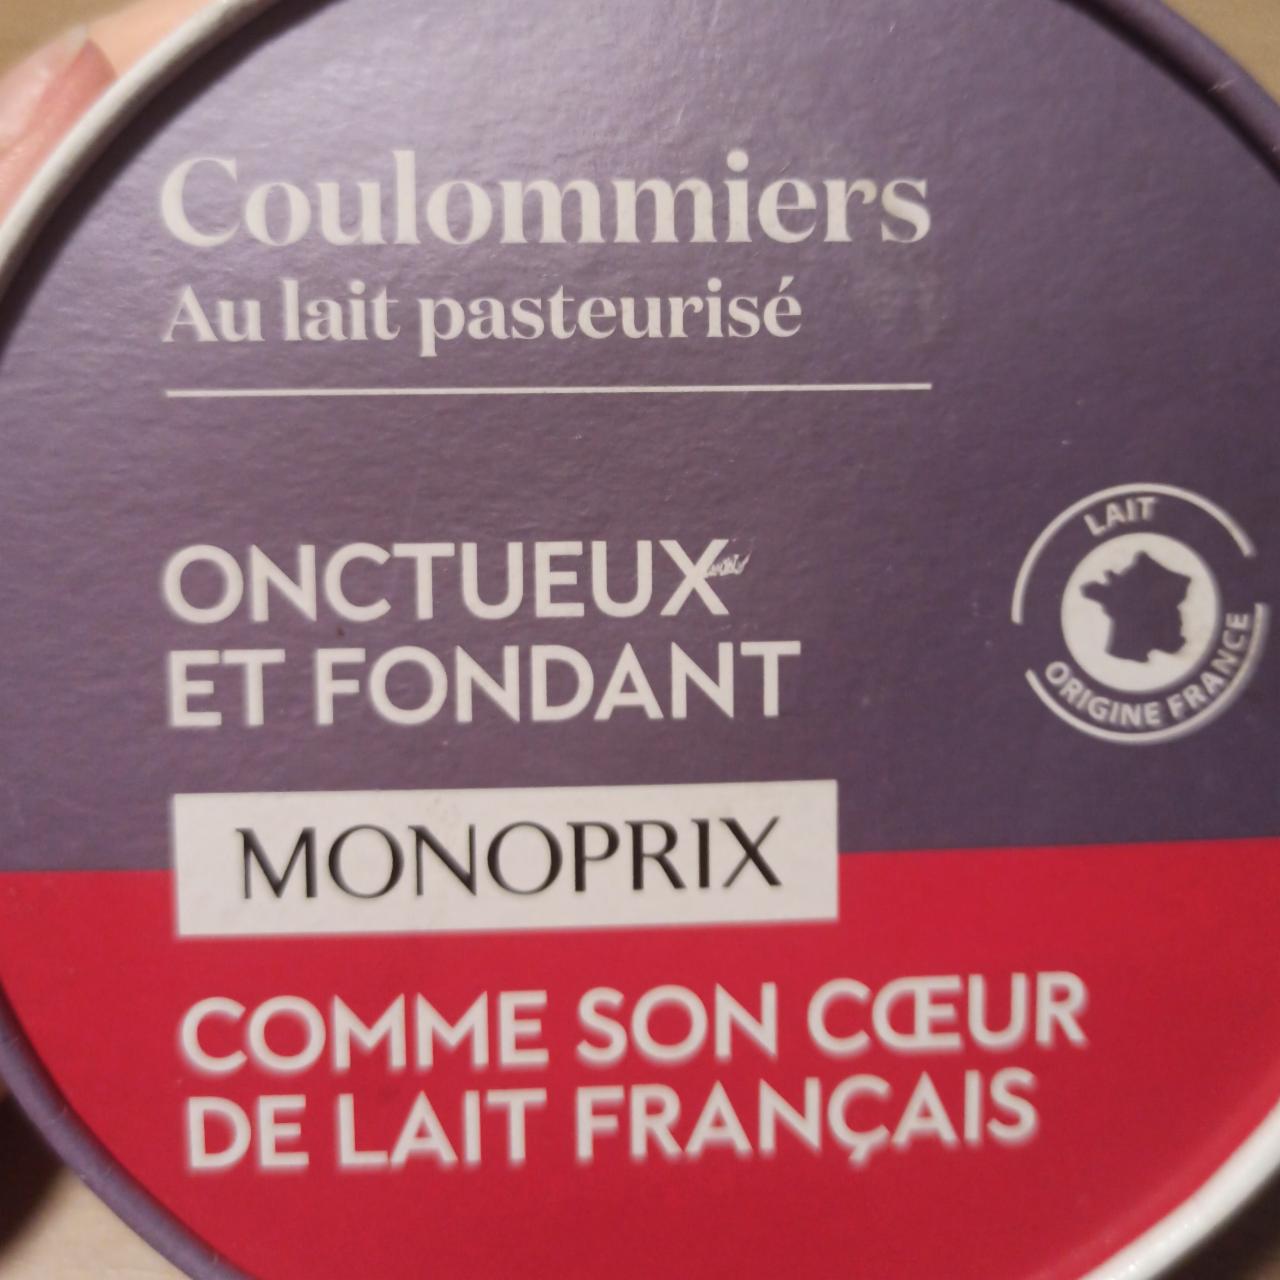 Fotografie - Coulommiers au lait pasteurisé Monoprix